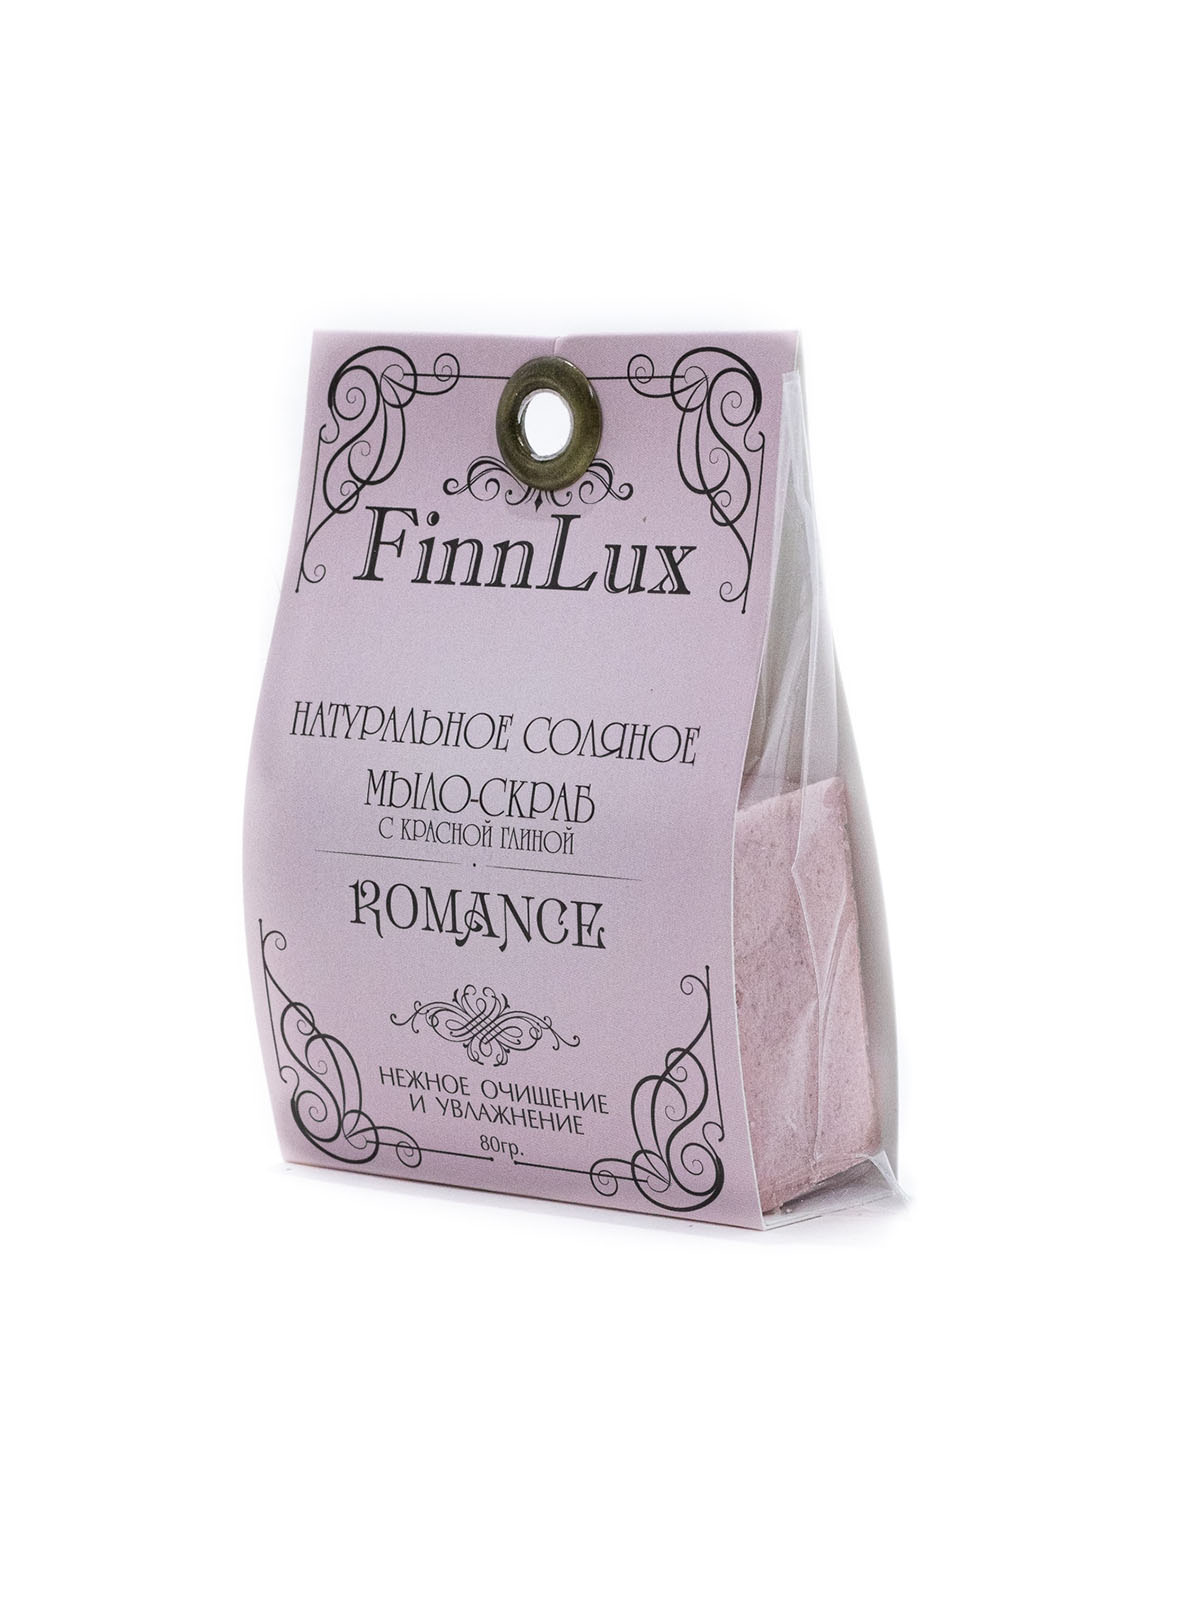 Мыло для рук Finn Lux Соляное ручной работы Romantic с нежным ароматом дикой розы вес 80 гр. - фото 2